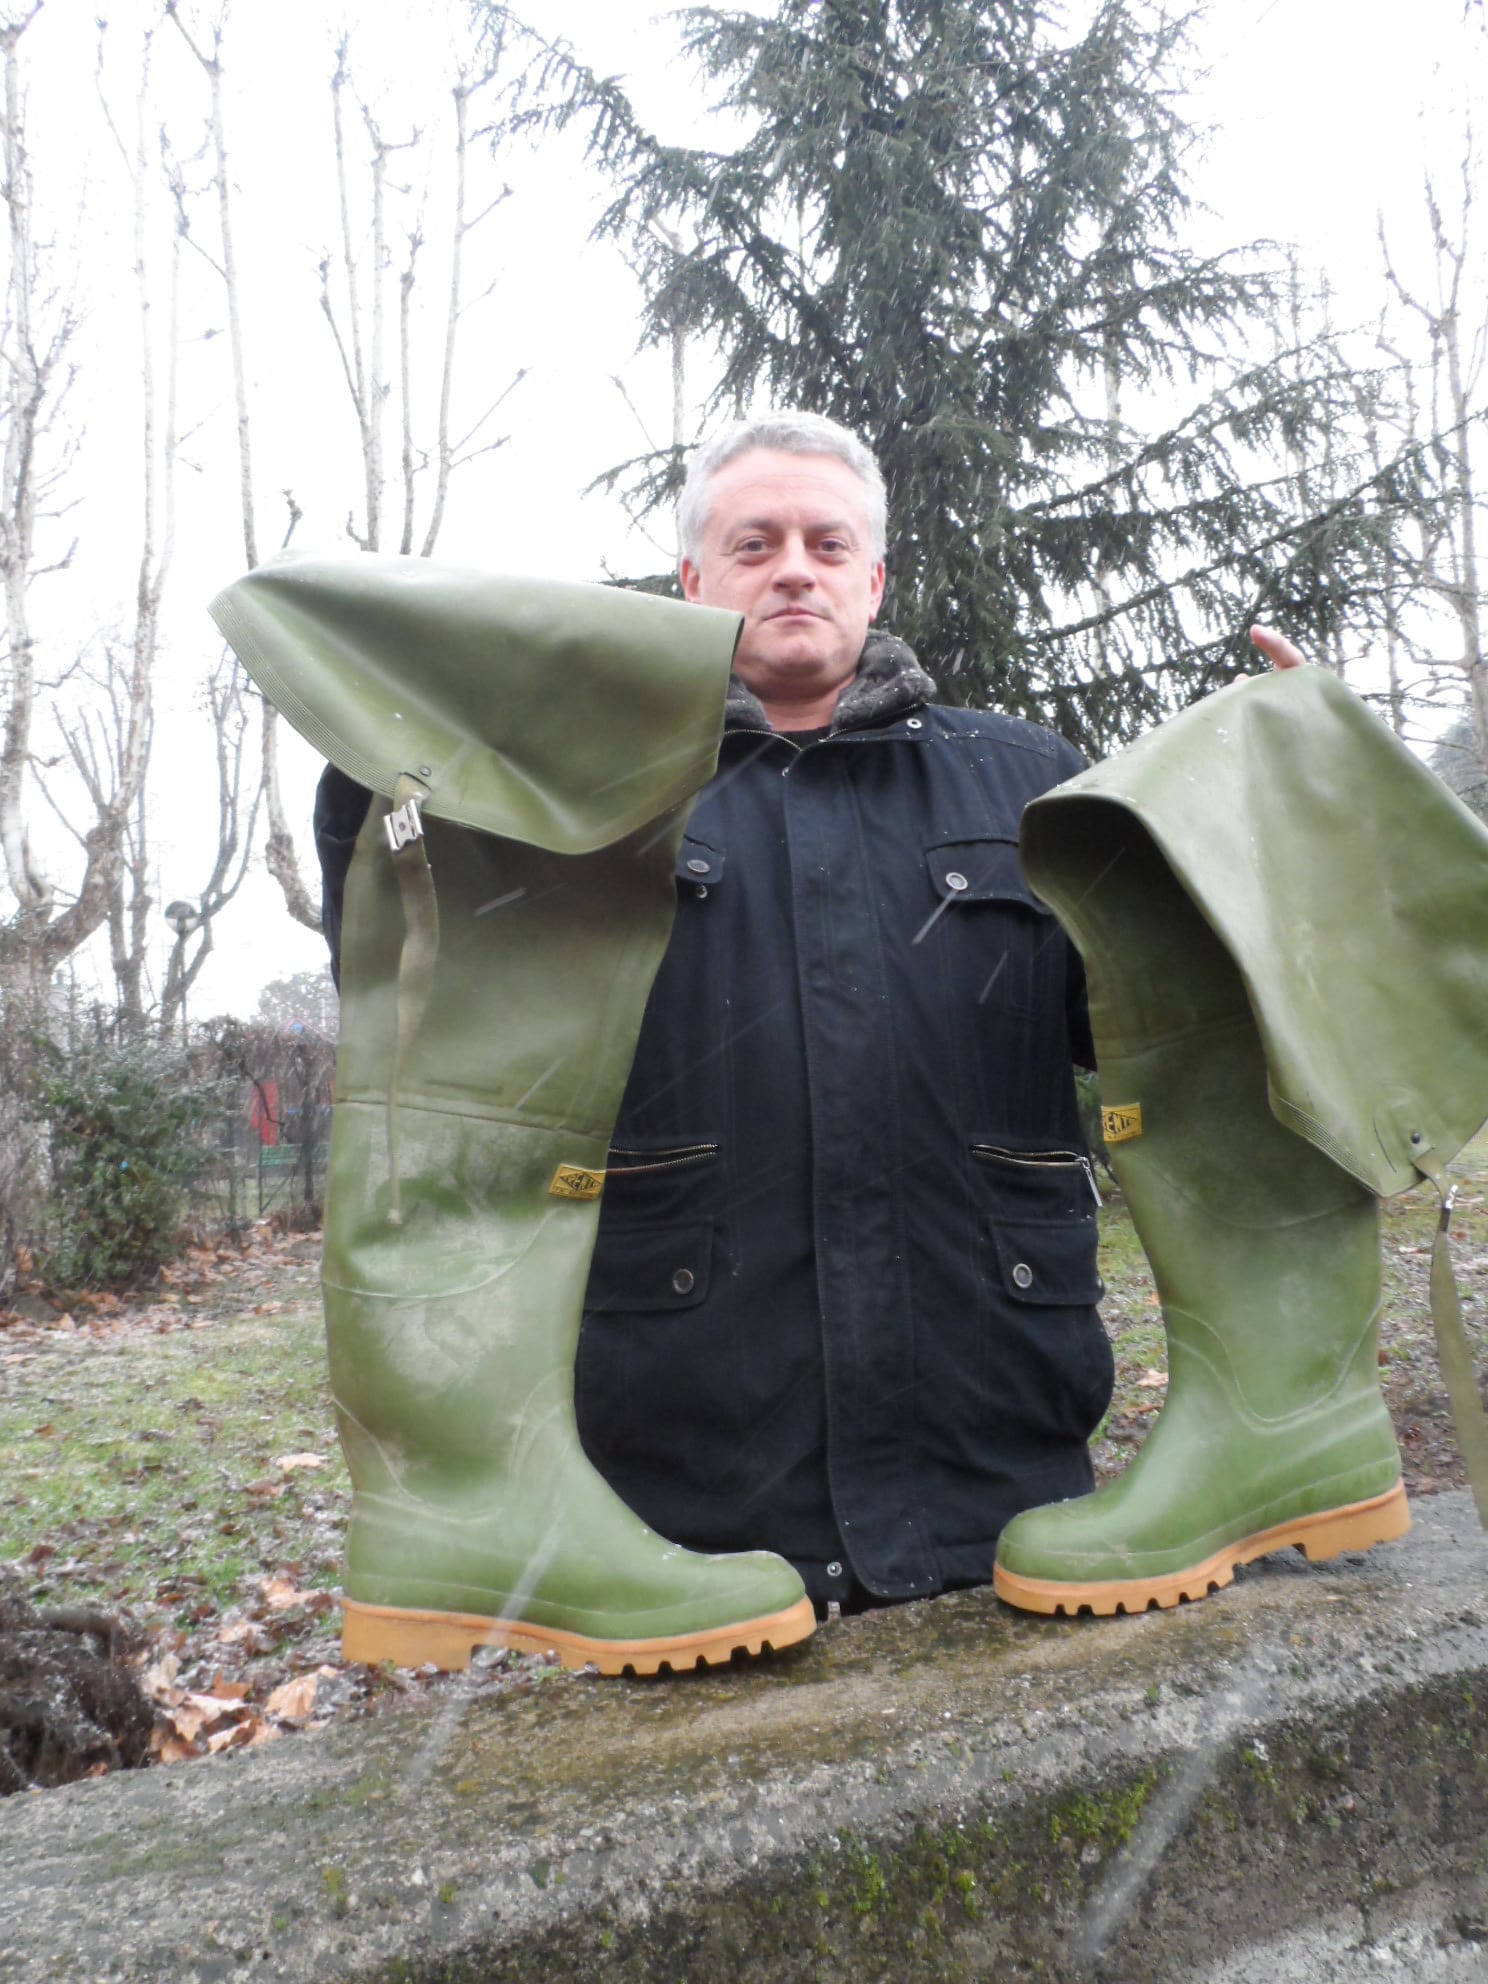 Stivali di Paleardi al Carroccio: “Lura inquinato, la Lega dov’era?”